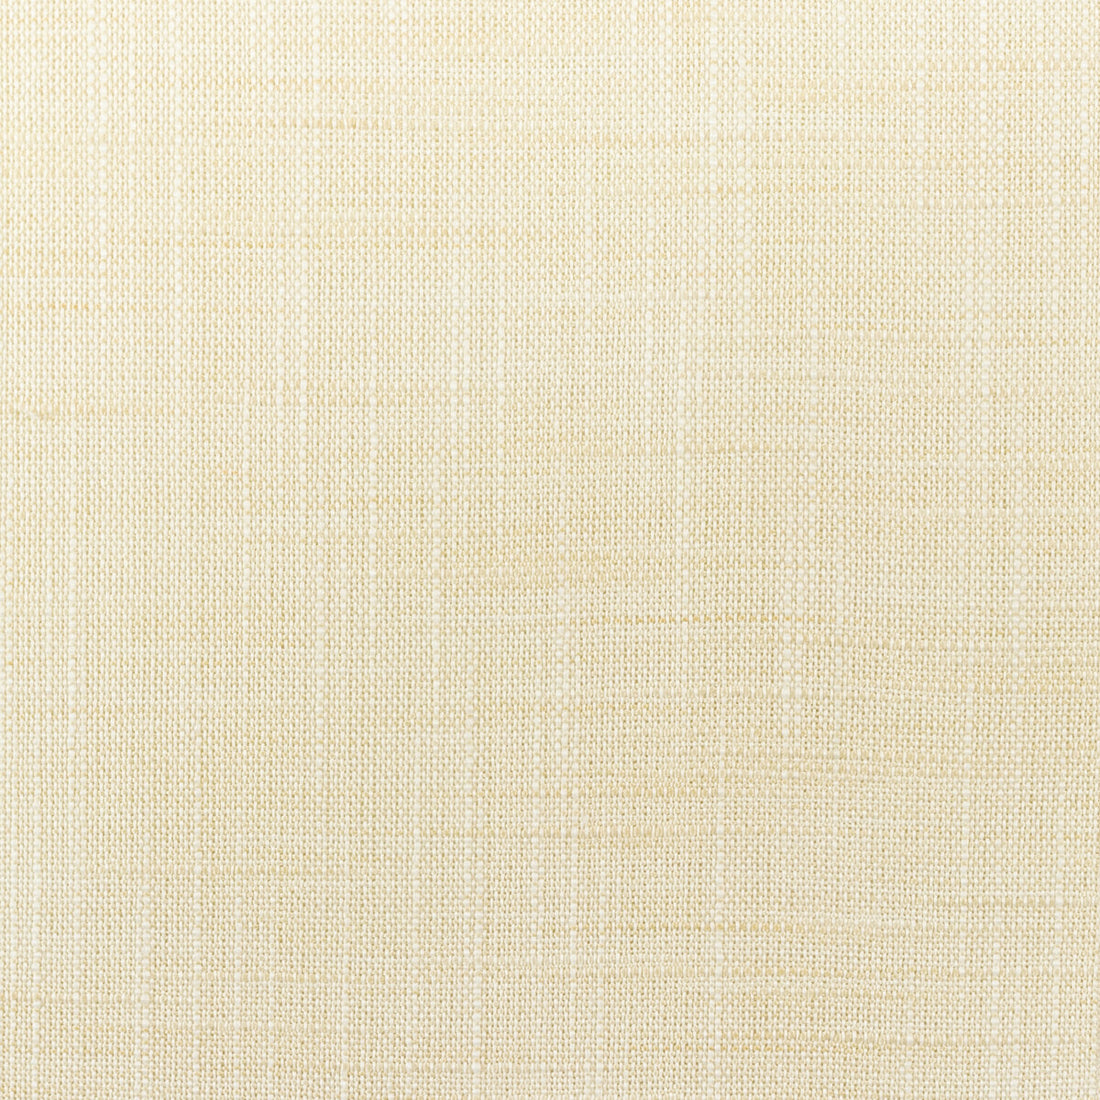 Kravet Basics fabric in 4668-111 color - pattern 4668.111.0 - by Kravet Basics